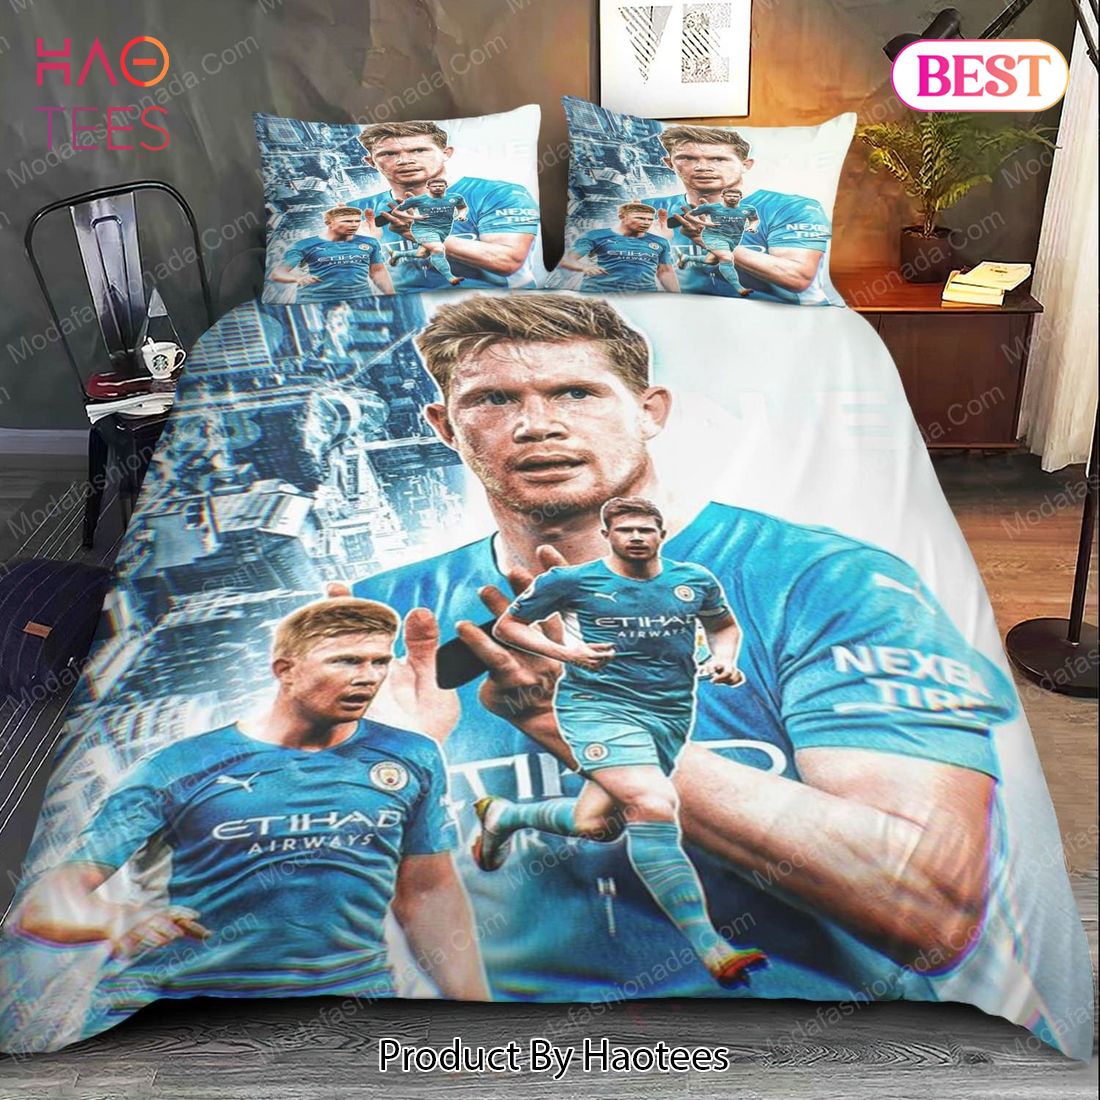 BEST Kevin De Bruyne Manchester City Bedding Sets Bed Sets, Bedroom Sets, Comforter Sets, Duvet Cover, Bedspread